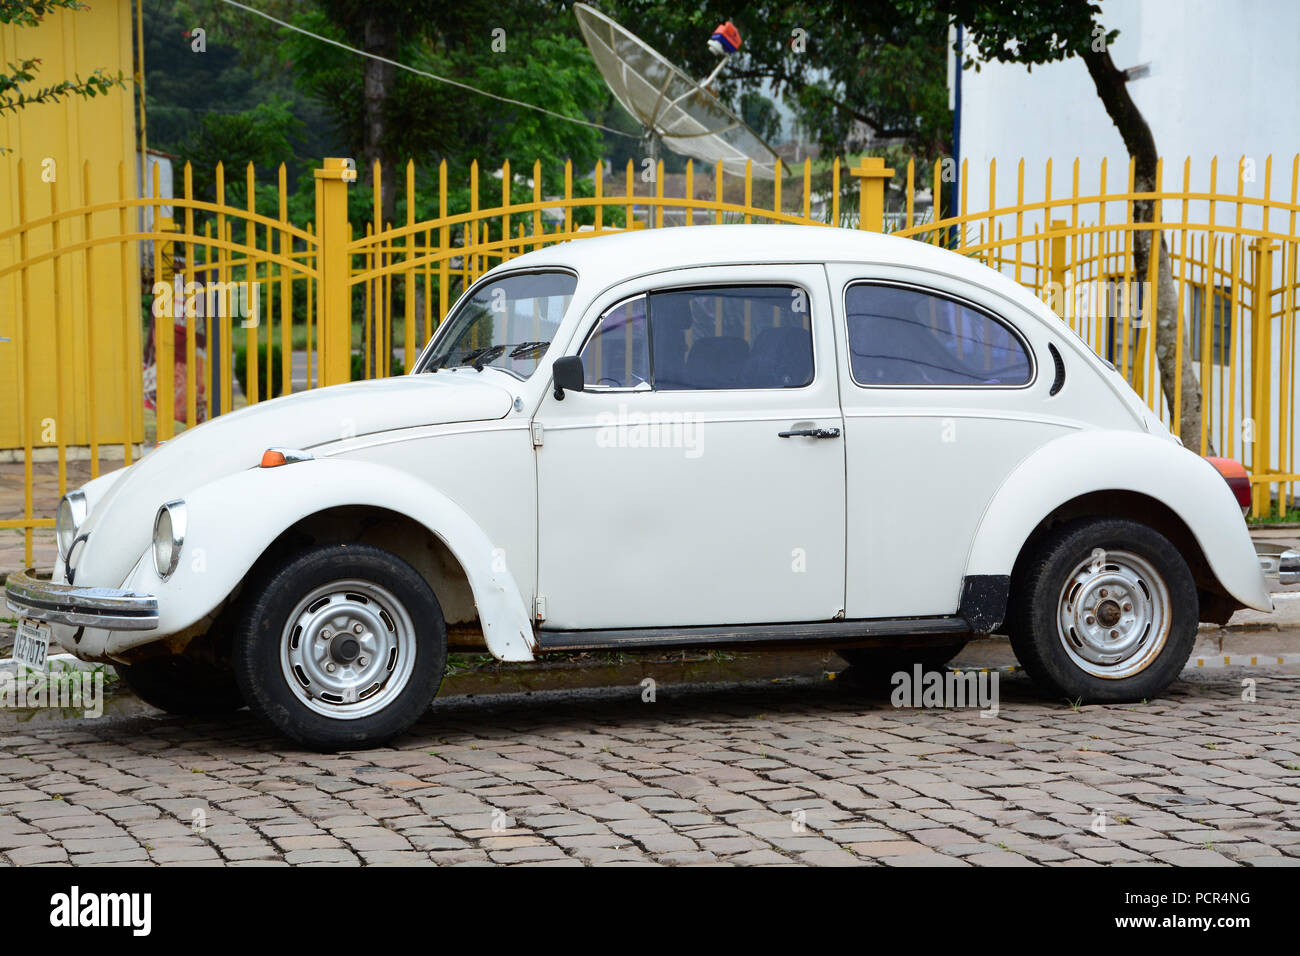 BRASIL - 12 Nov, 2014: Der VW-Käfer (offiziell der VW Typ 1, ist ein zwei-Tür, vier Pkw, hinten - Motor Wirtschaft Auto hergestellt und Stockfoto